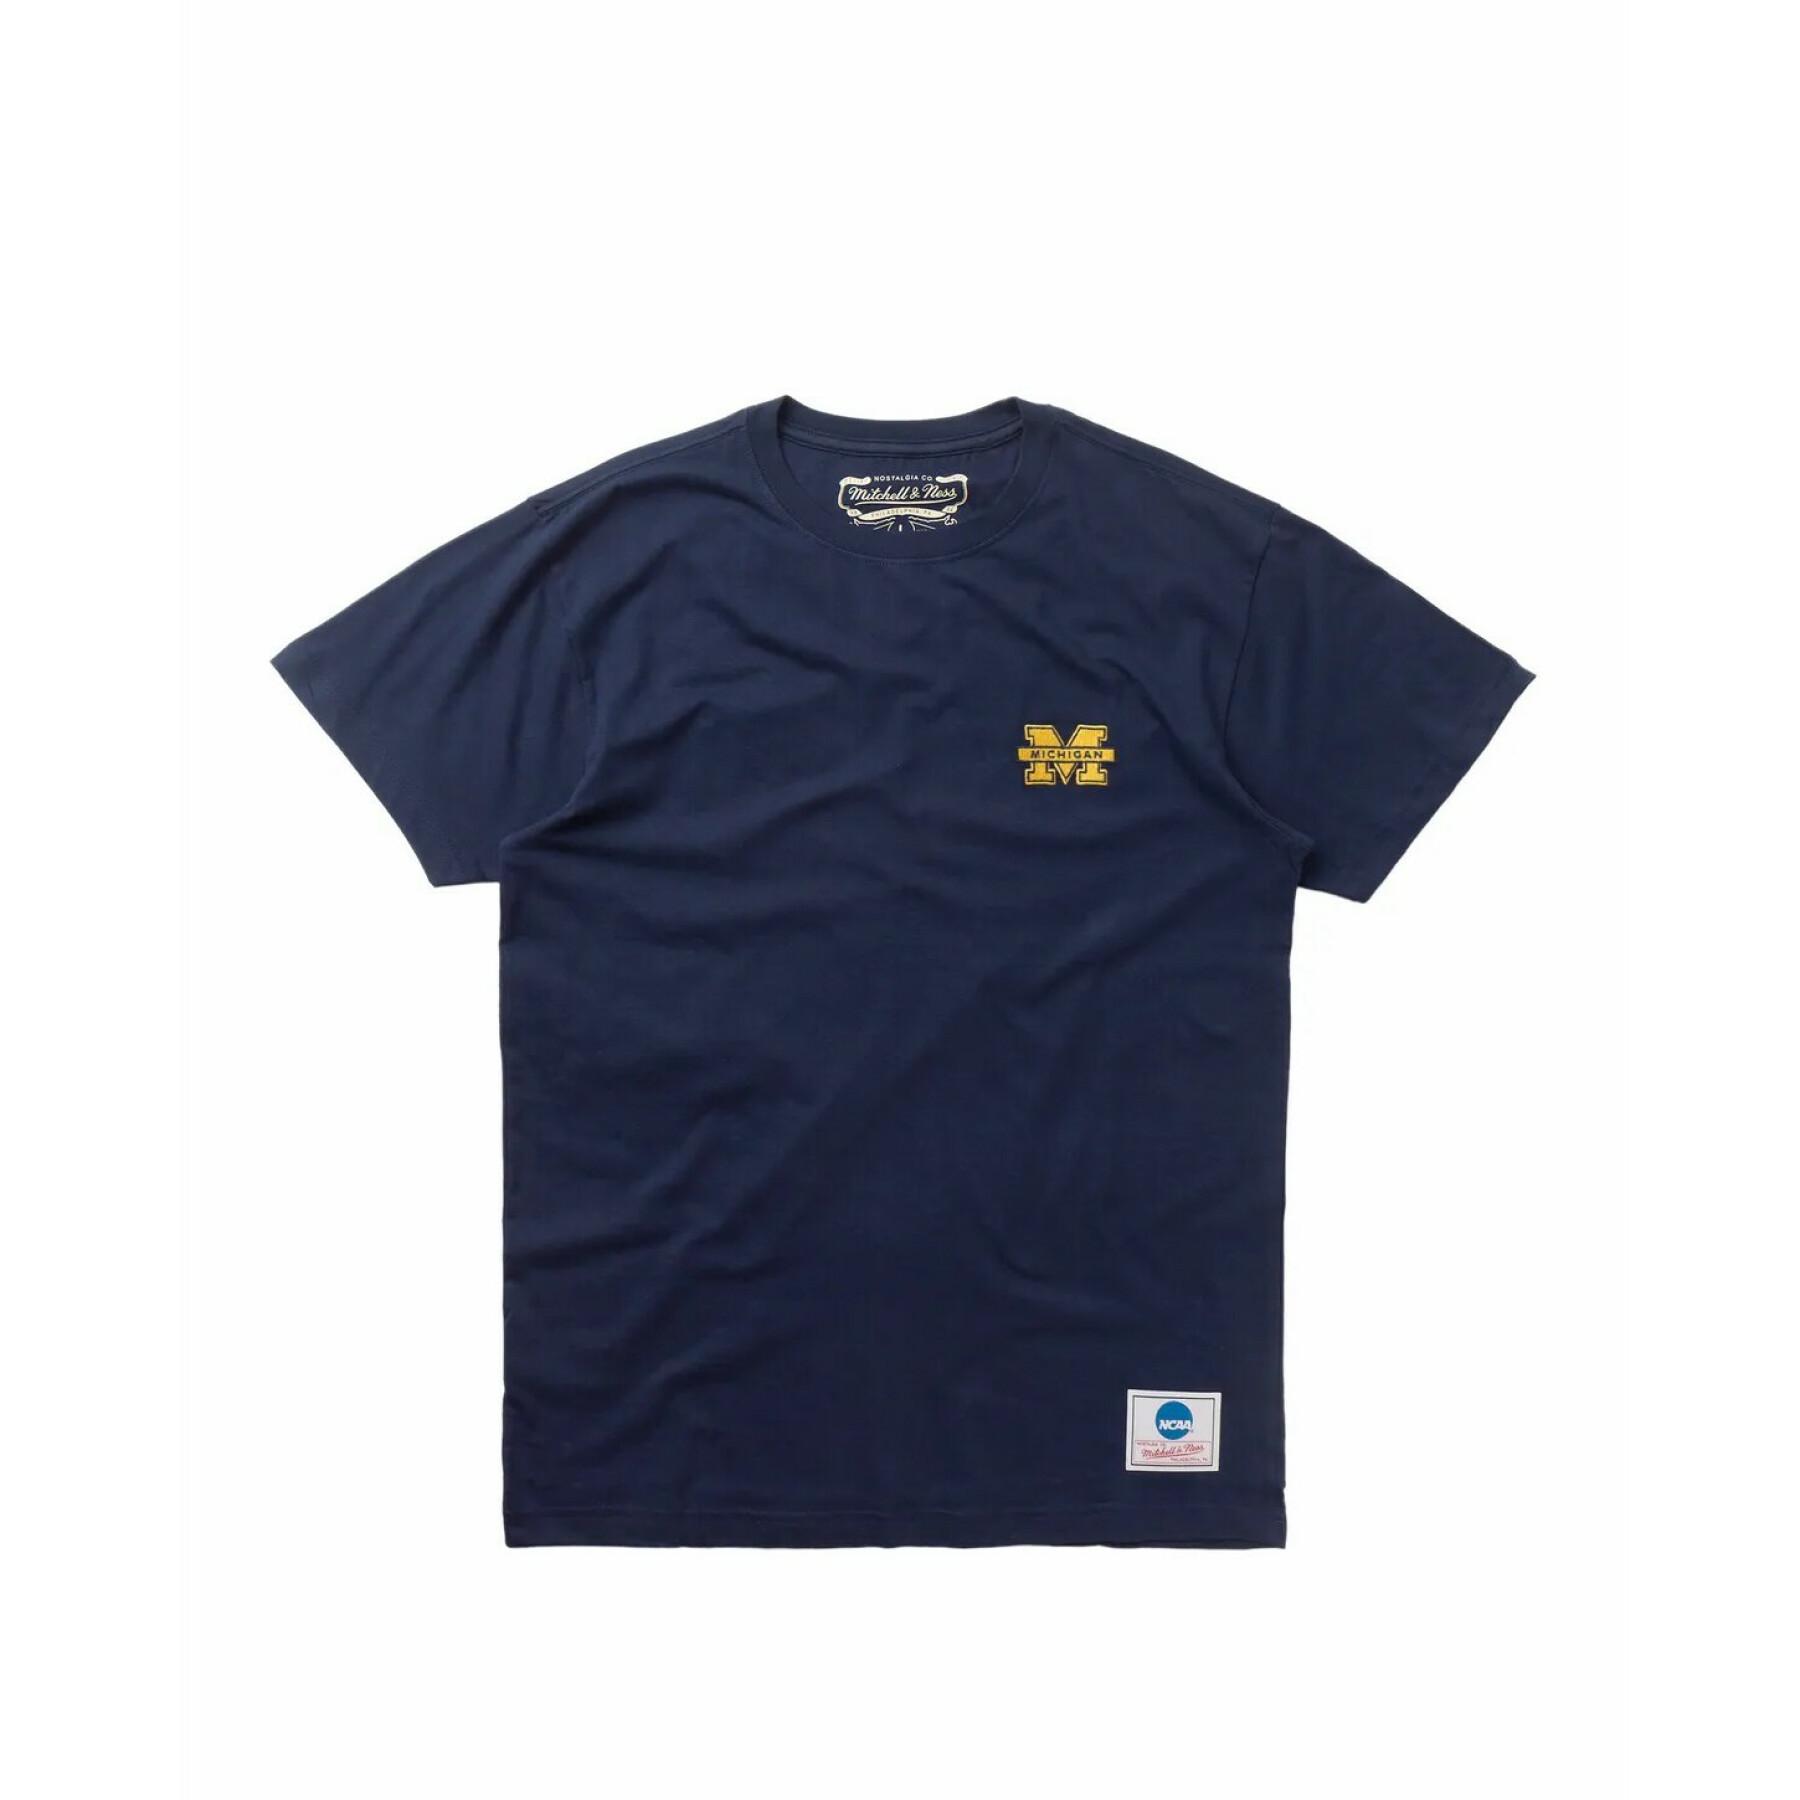 T-shirt universität michigan gesticktes logo